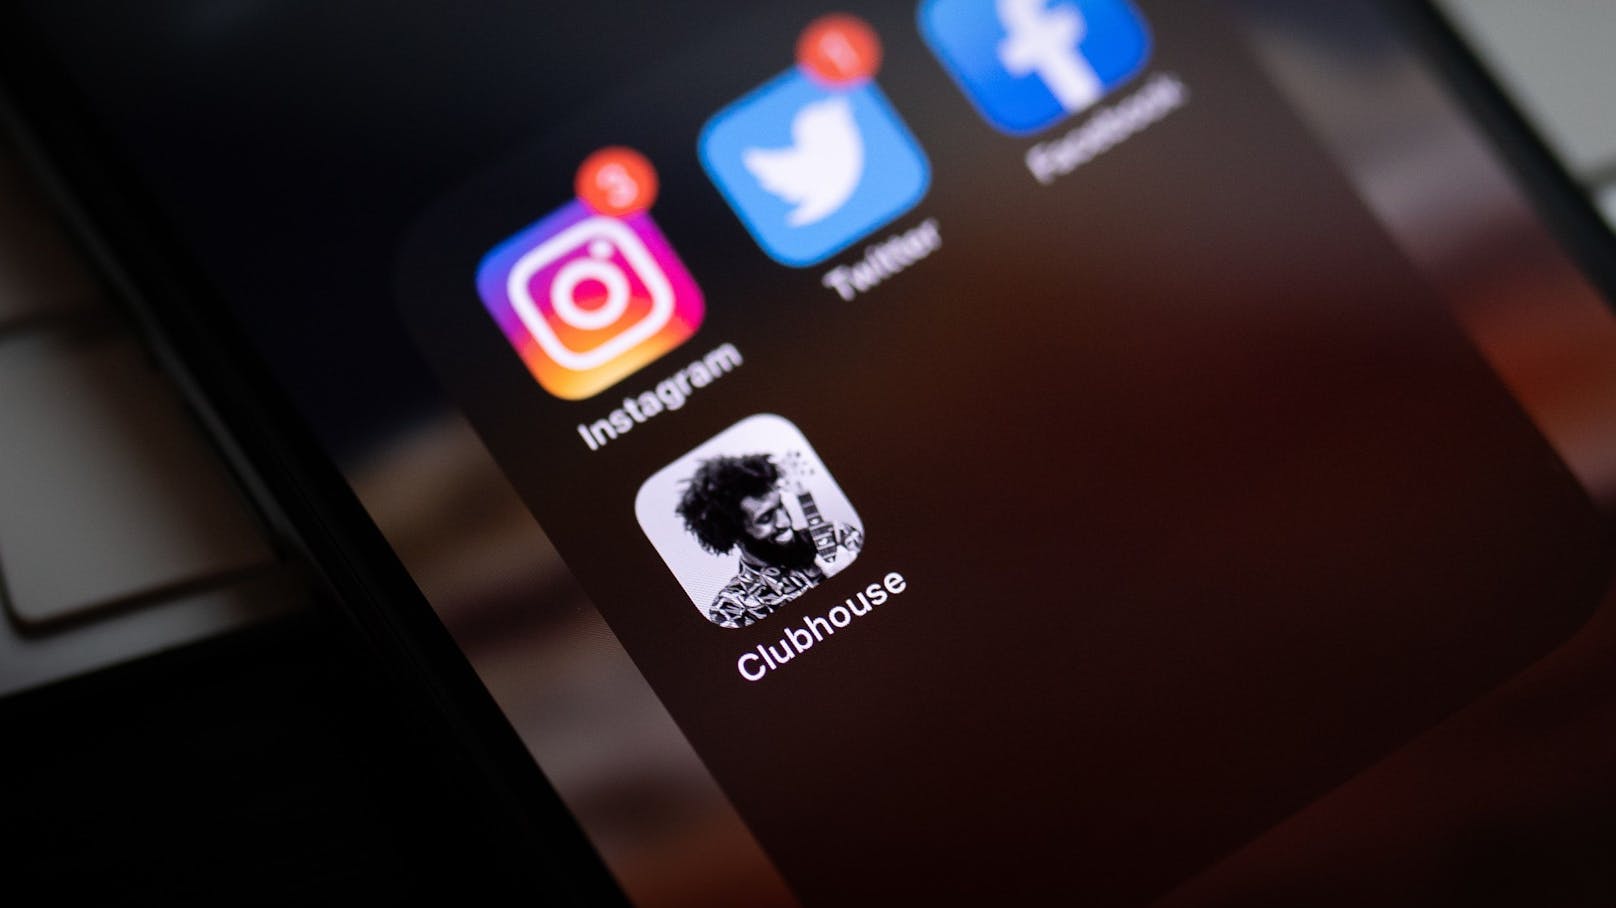 Clubhouse - eine Social Media App, die statt Fotos auf Live-Talks (ohne Video) setzt.